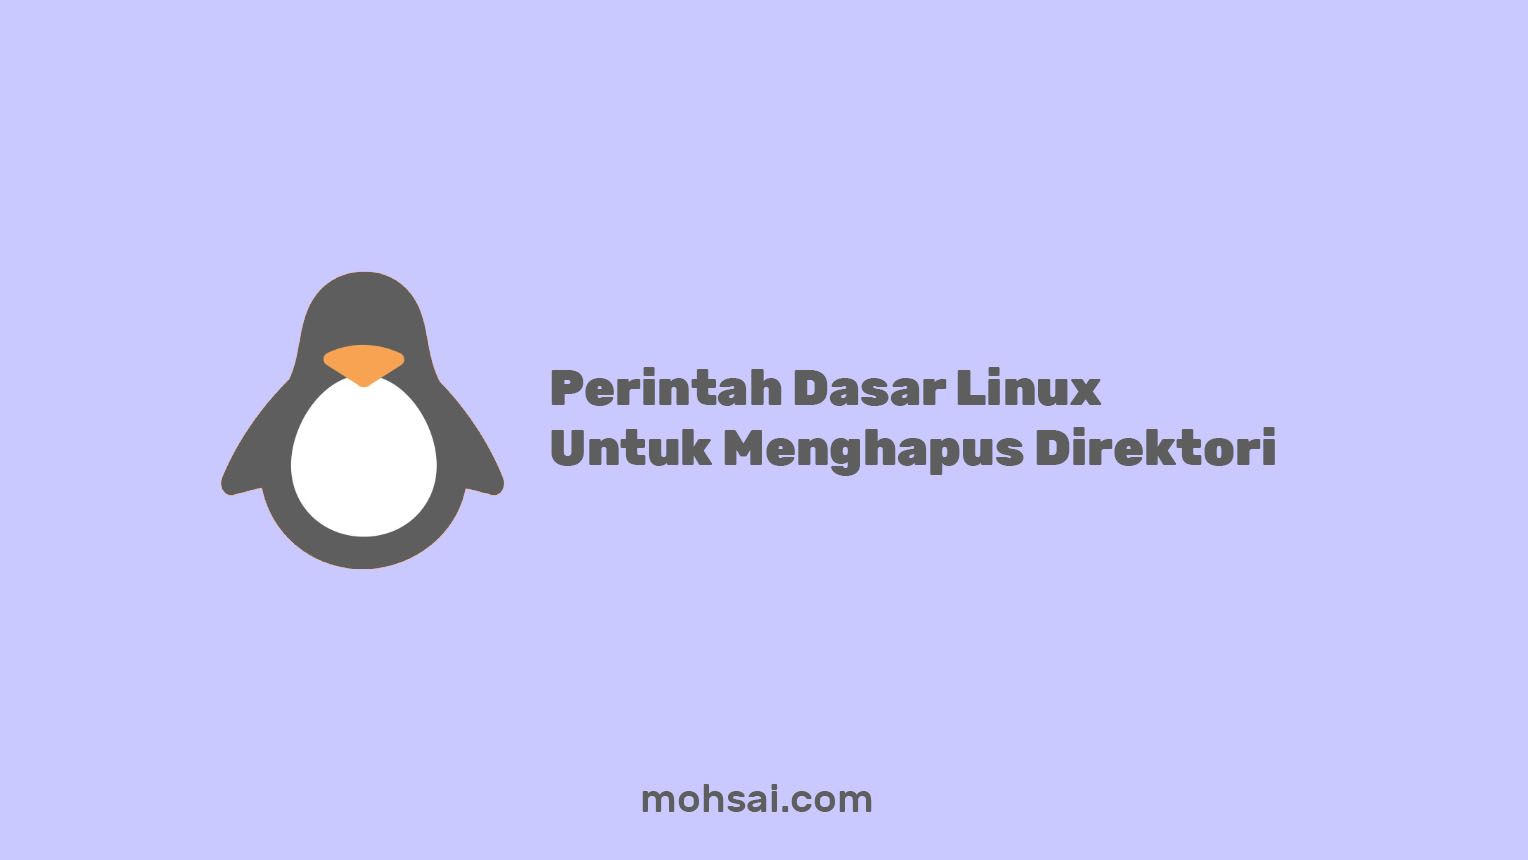 Perintah Dasar Linux Yang Digunakan Untuk Menghapus Direktori adalah